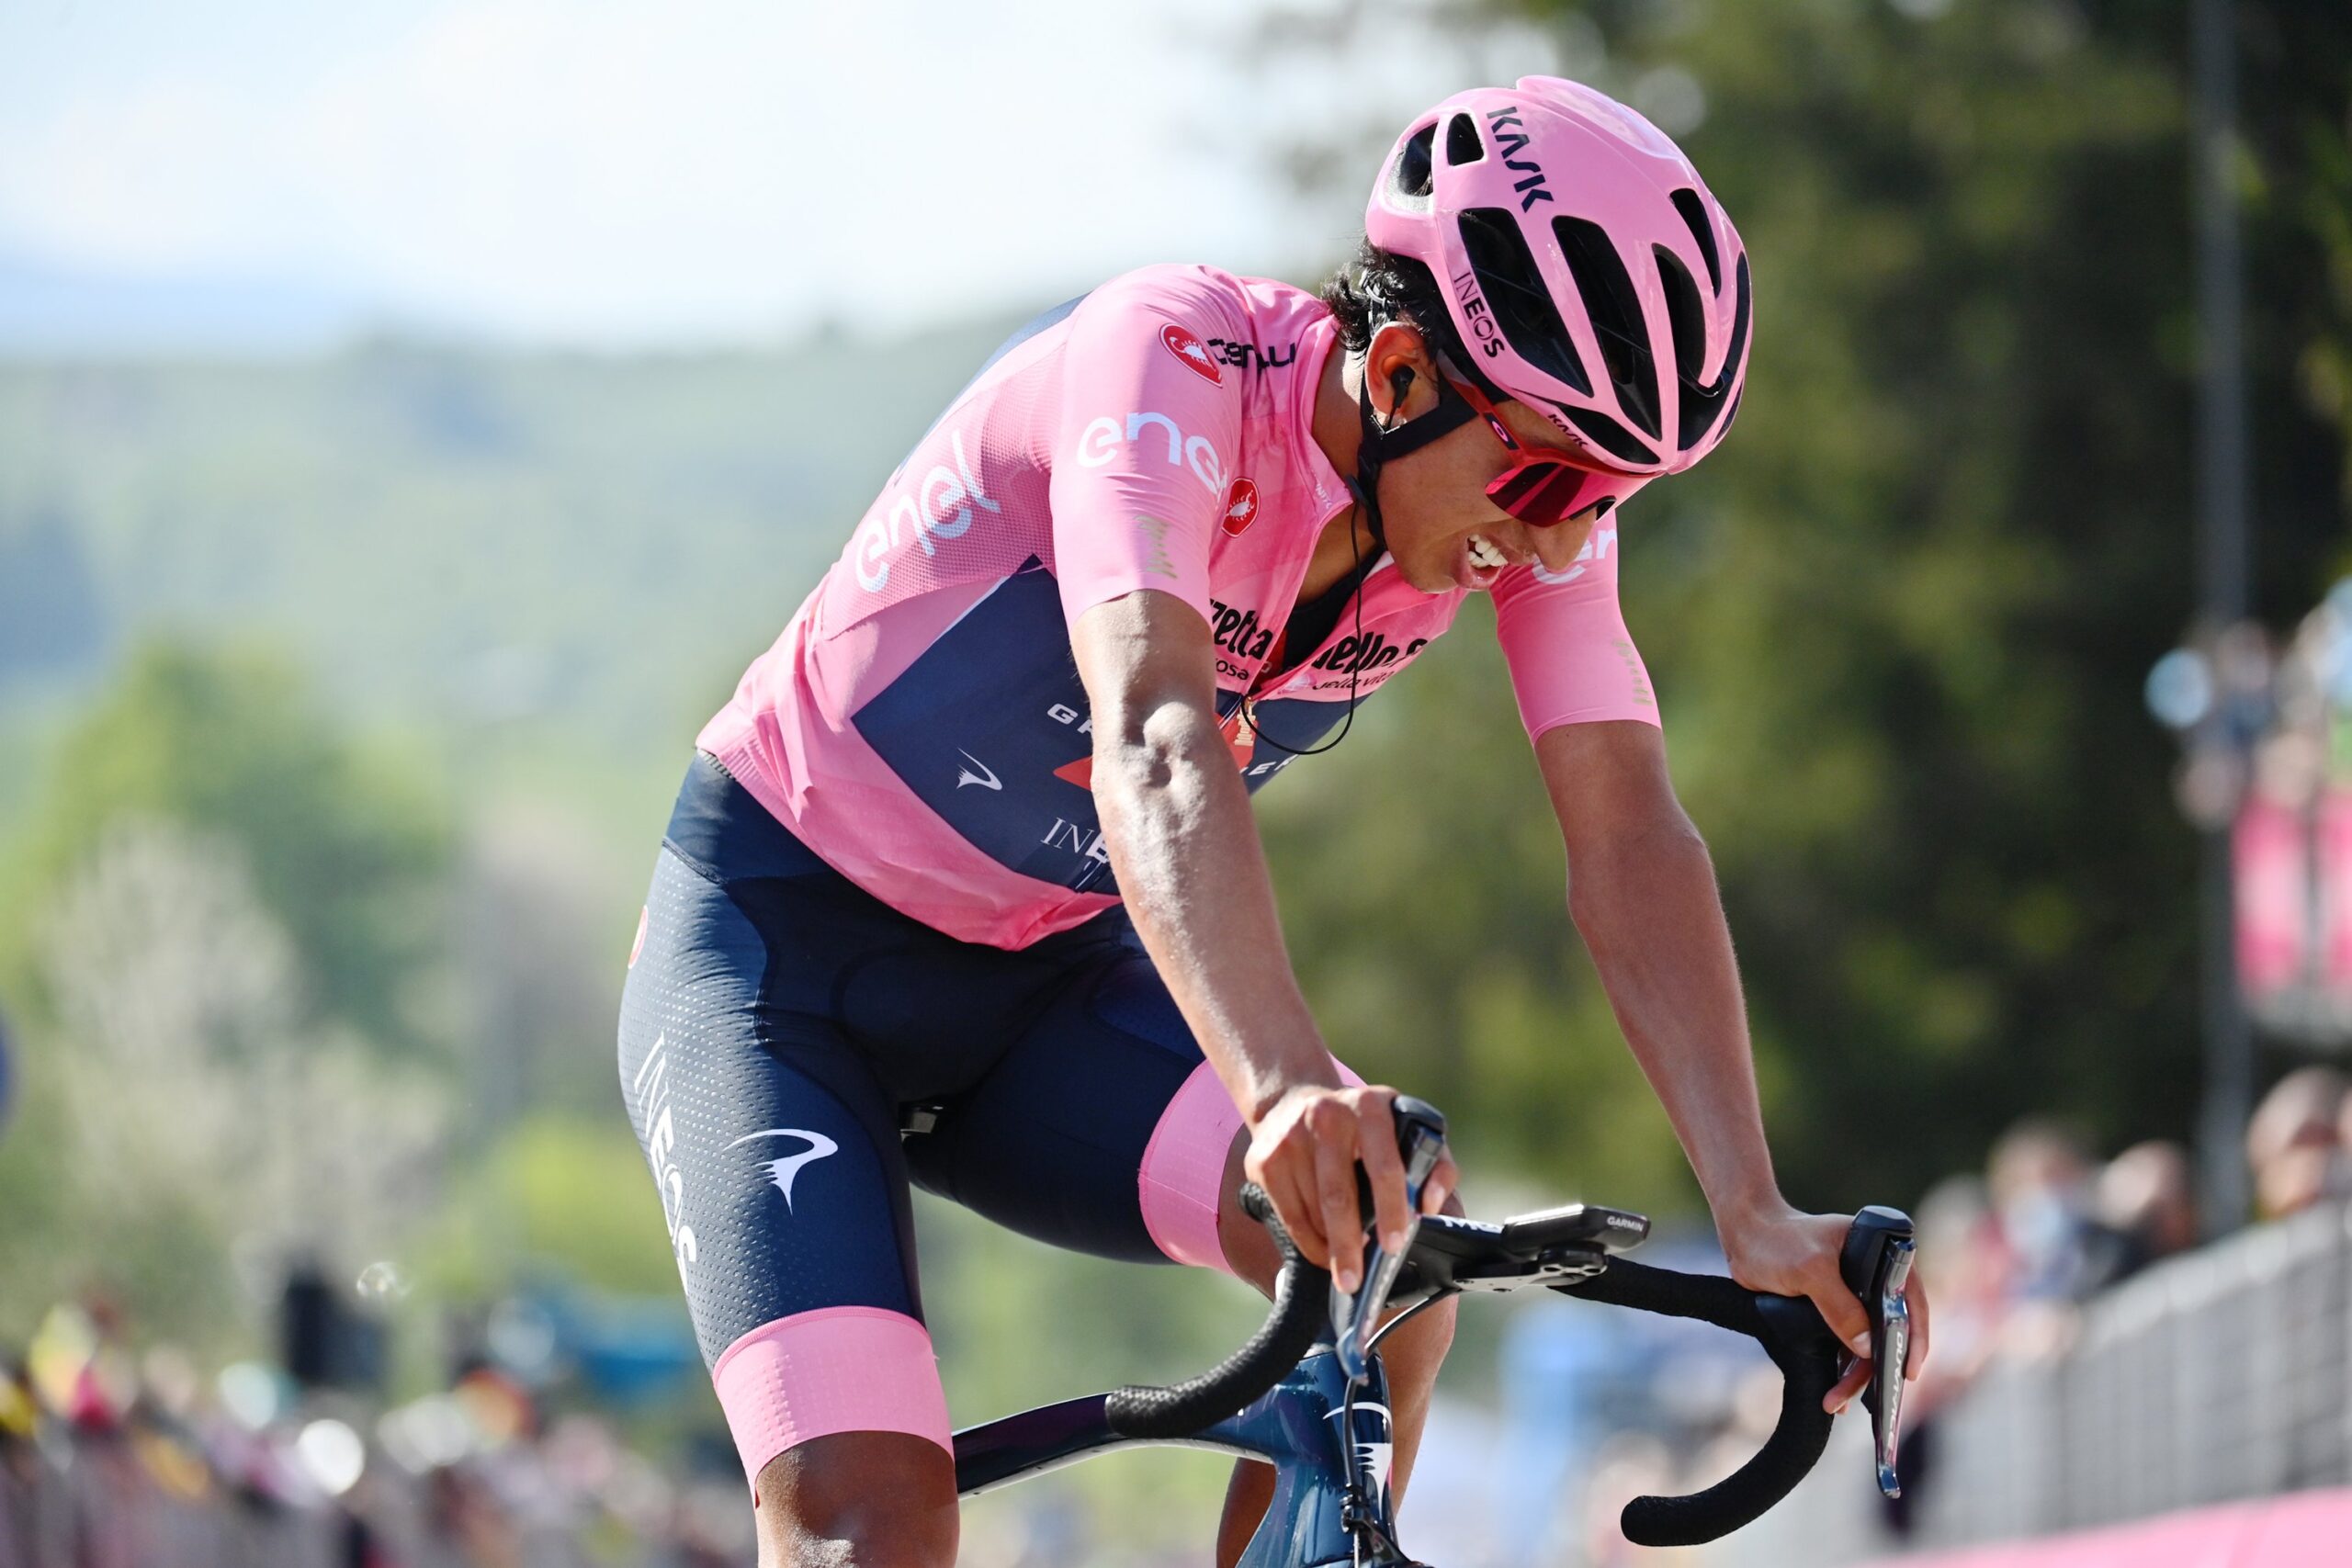 Giro d’Italia 2021. Egan Bernal: “jeden kolarz jest silniejszy ode mnie”